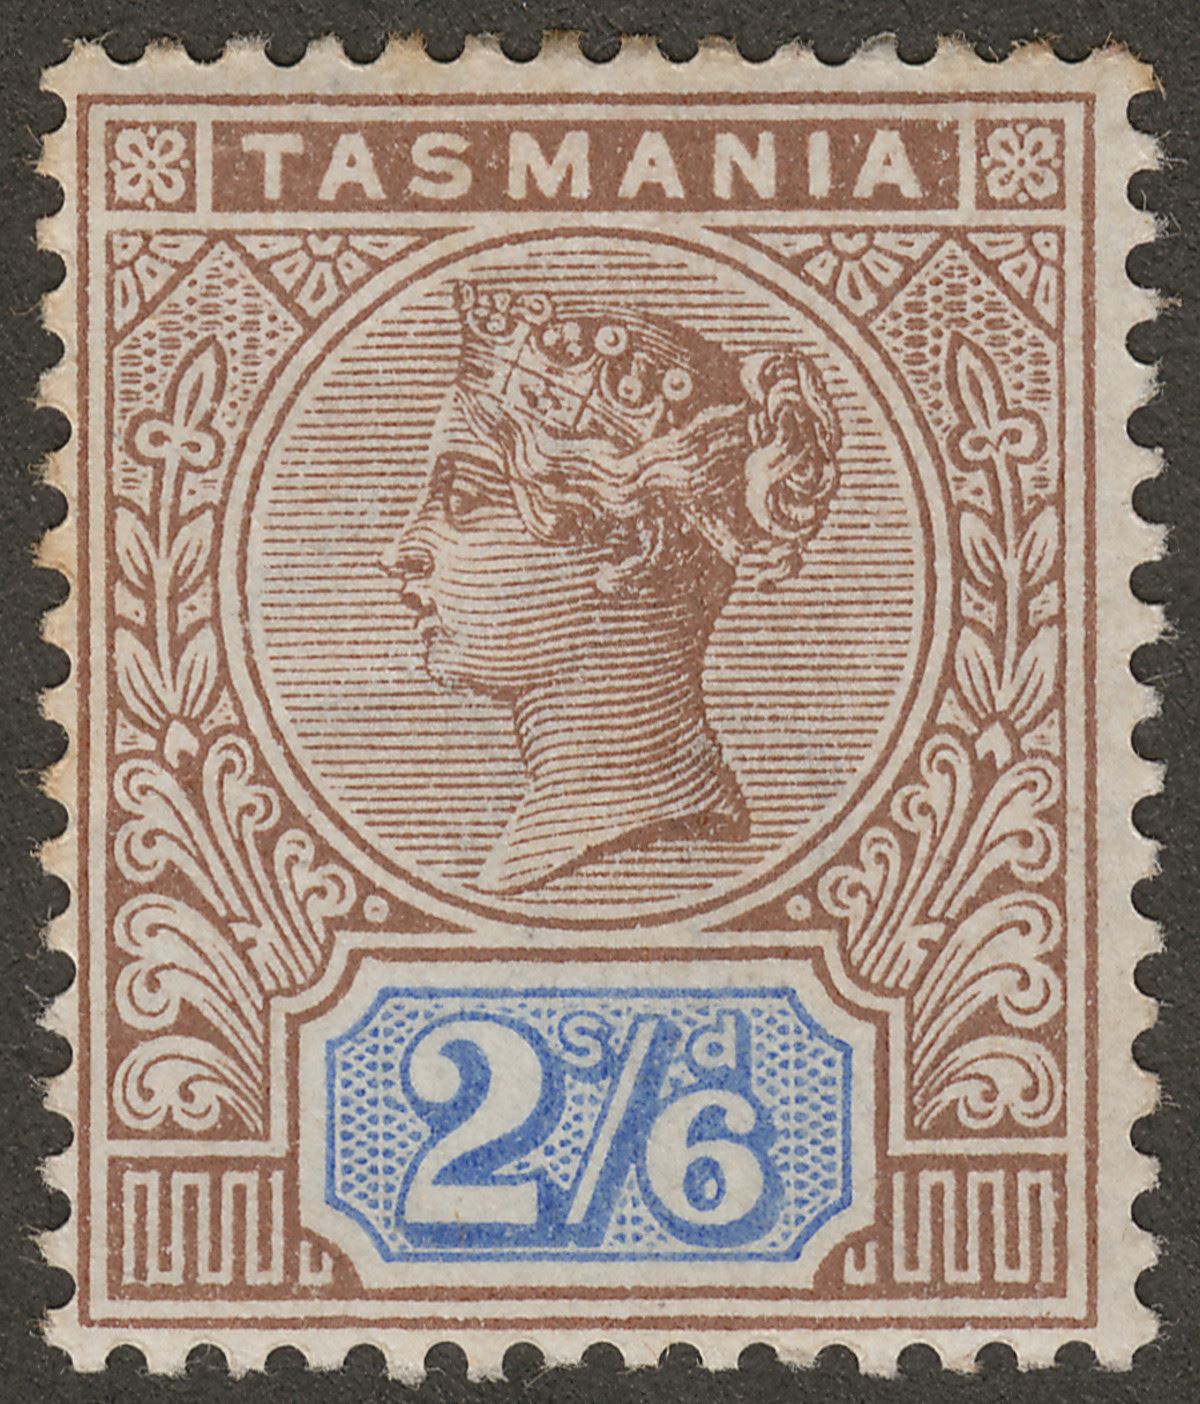 Tasmania 1892 Queen Victoria 2sh6d Brown and Blue Mint SG222 cat £32 w tones